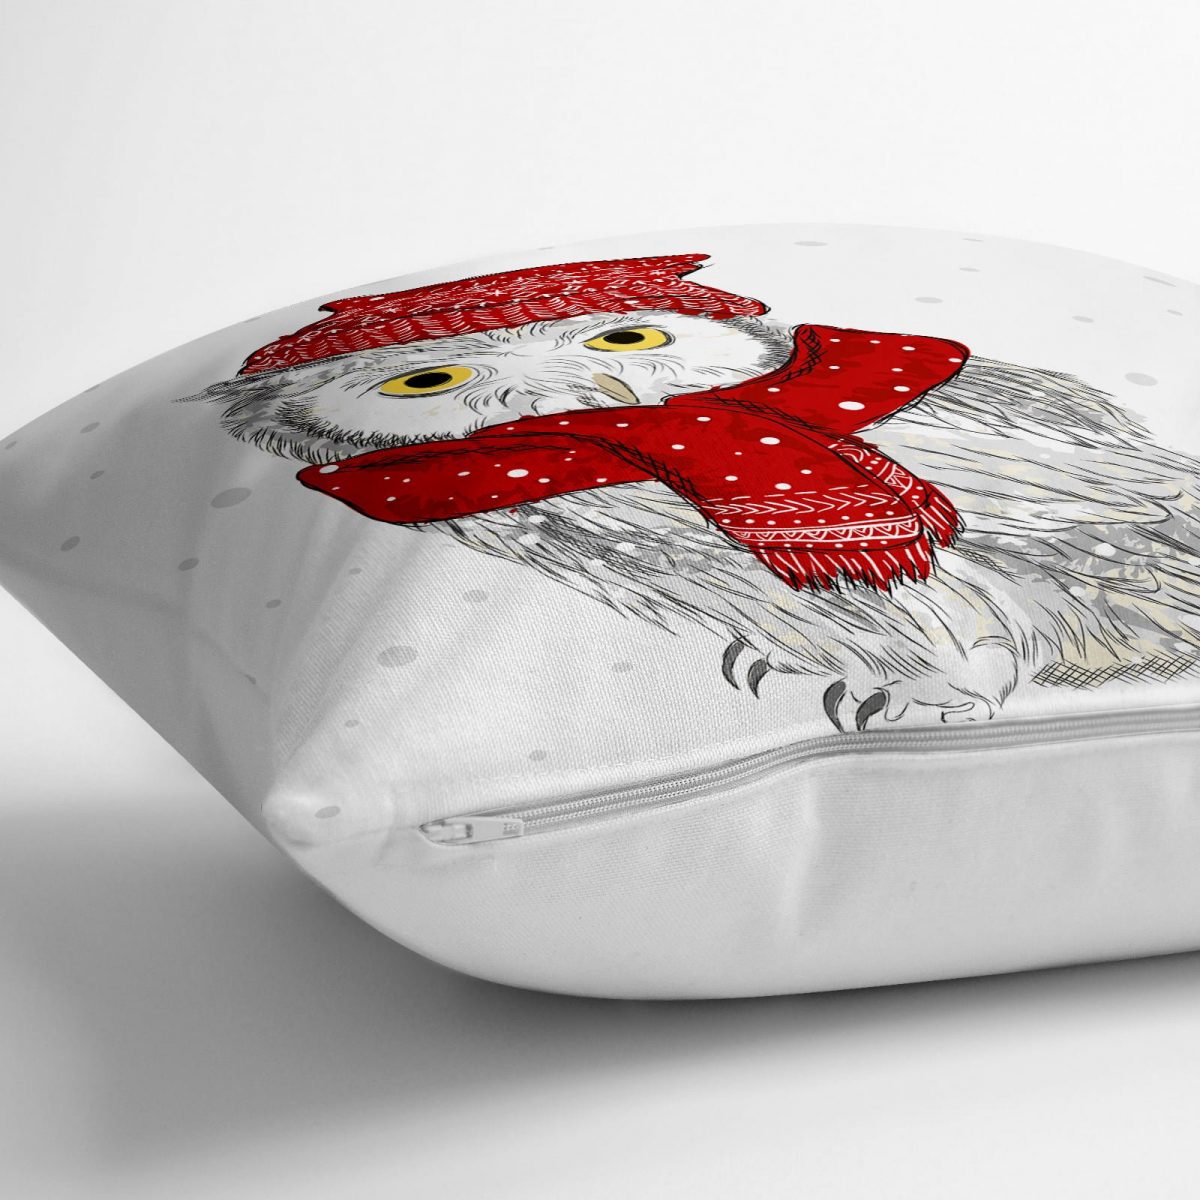 Kış Motifli Baykuş Temalı Dijital Baskılı Dekoratif Yer Minderi - 70 x 70 cm Realhomes